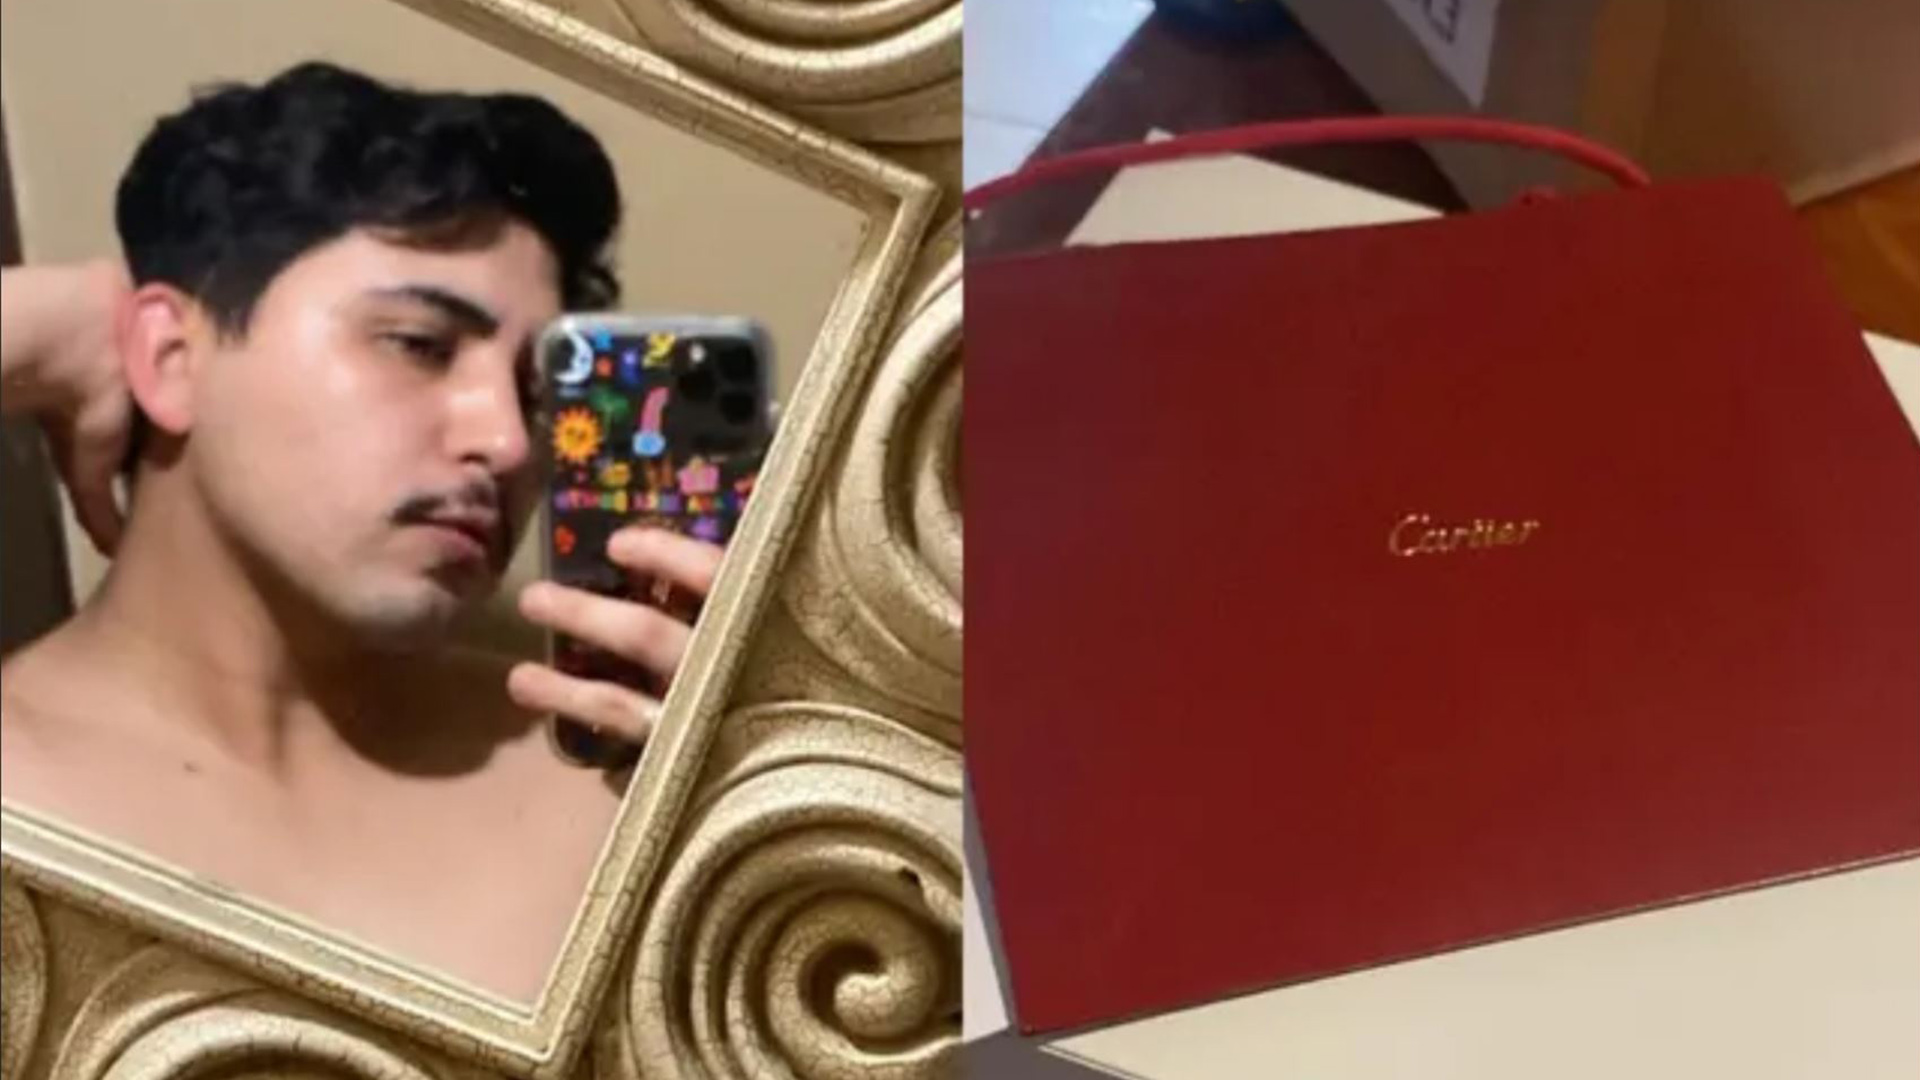 FOTOS: Cartier entrega aretes al joven que los compró en 237 pesos, así le llegaron